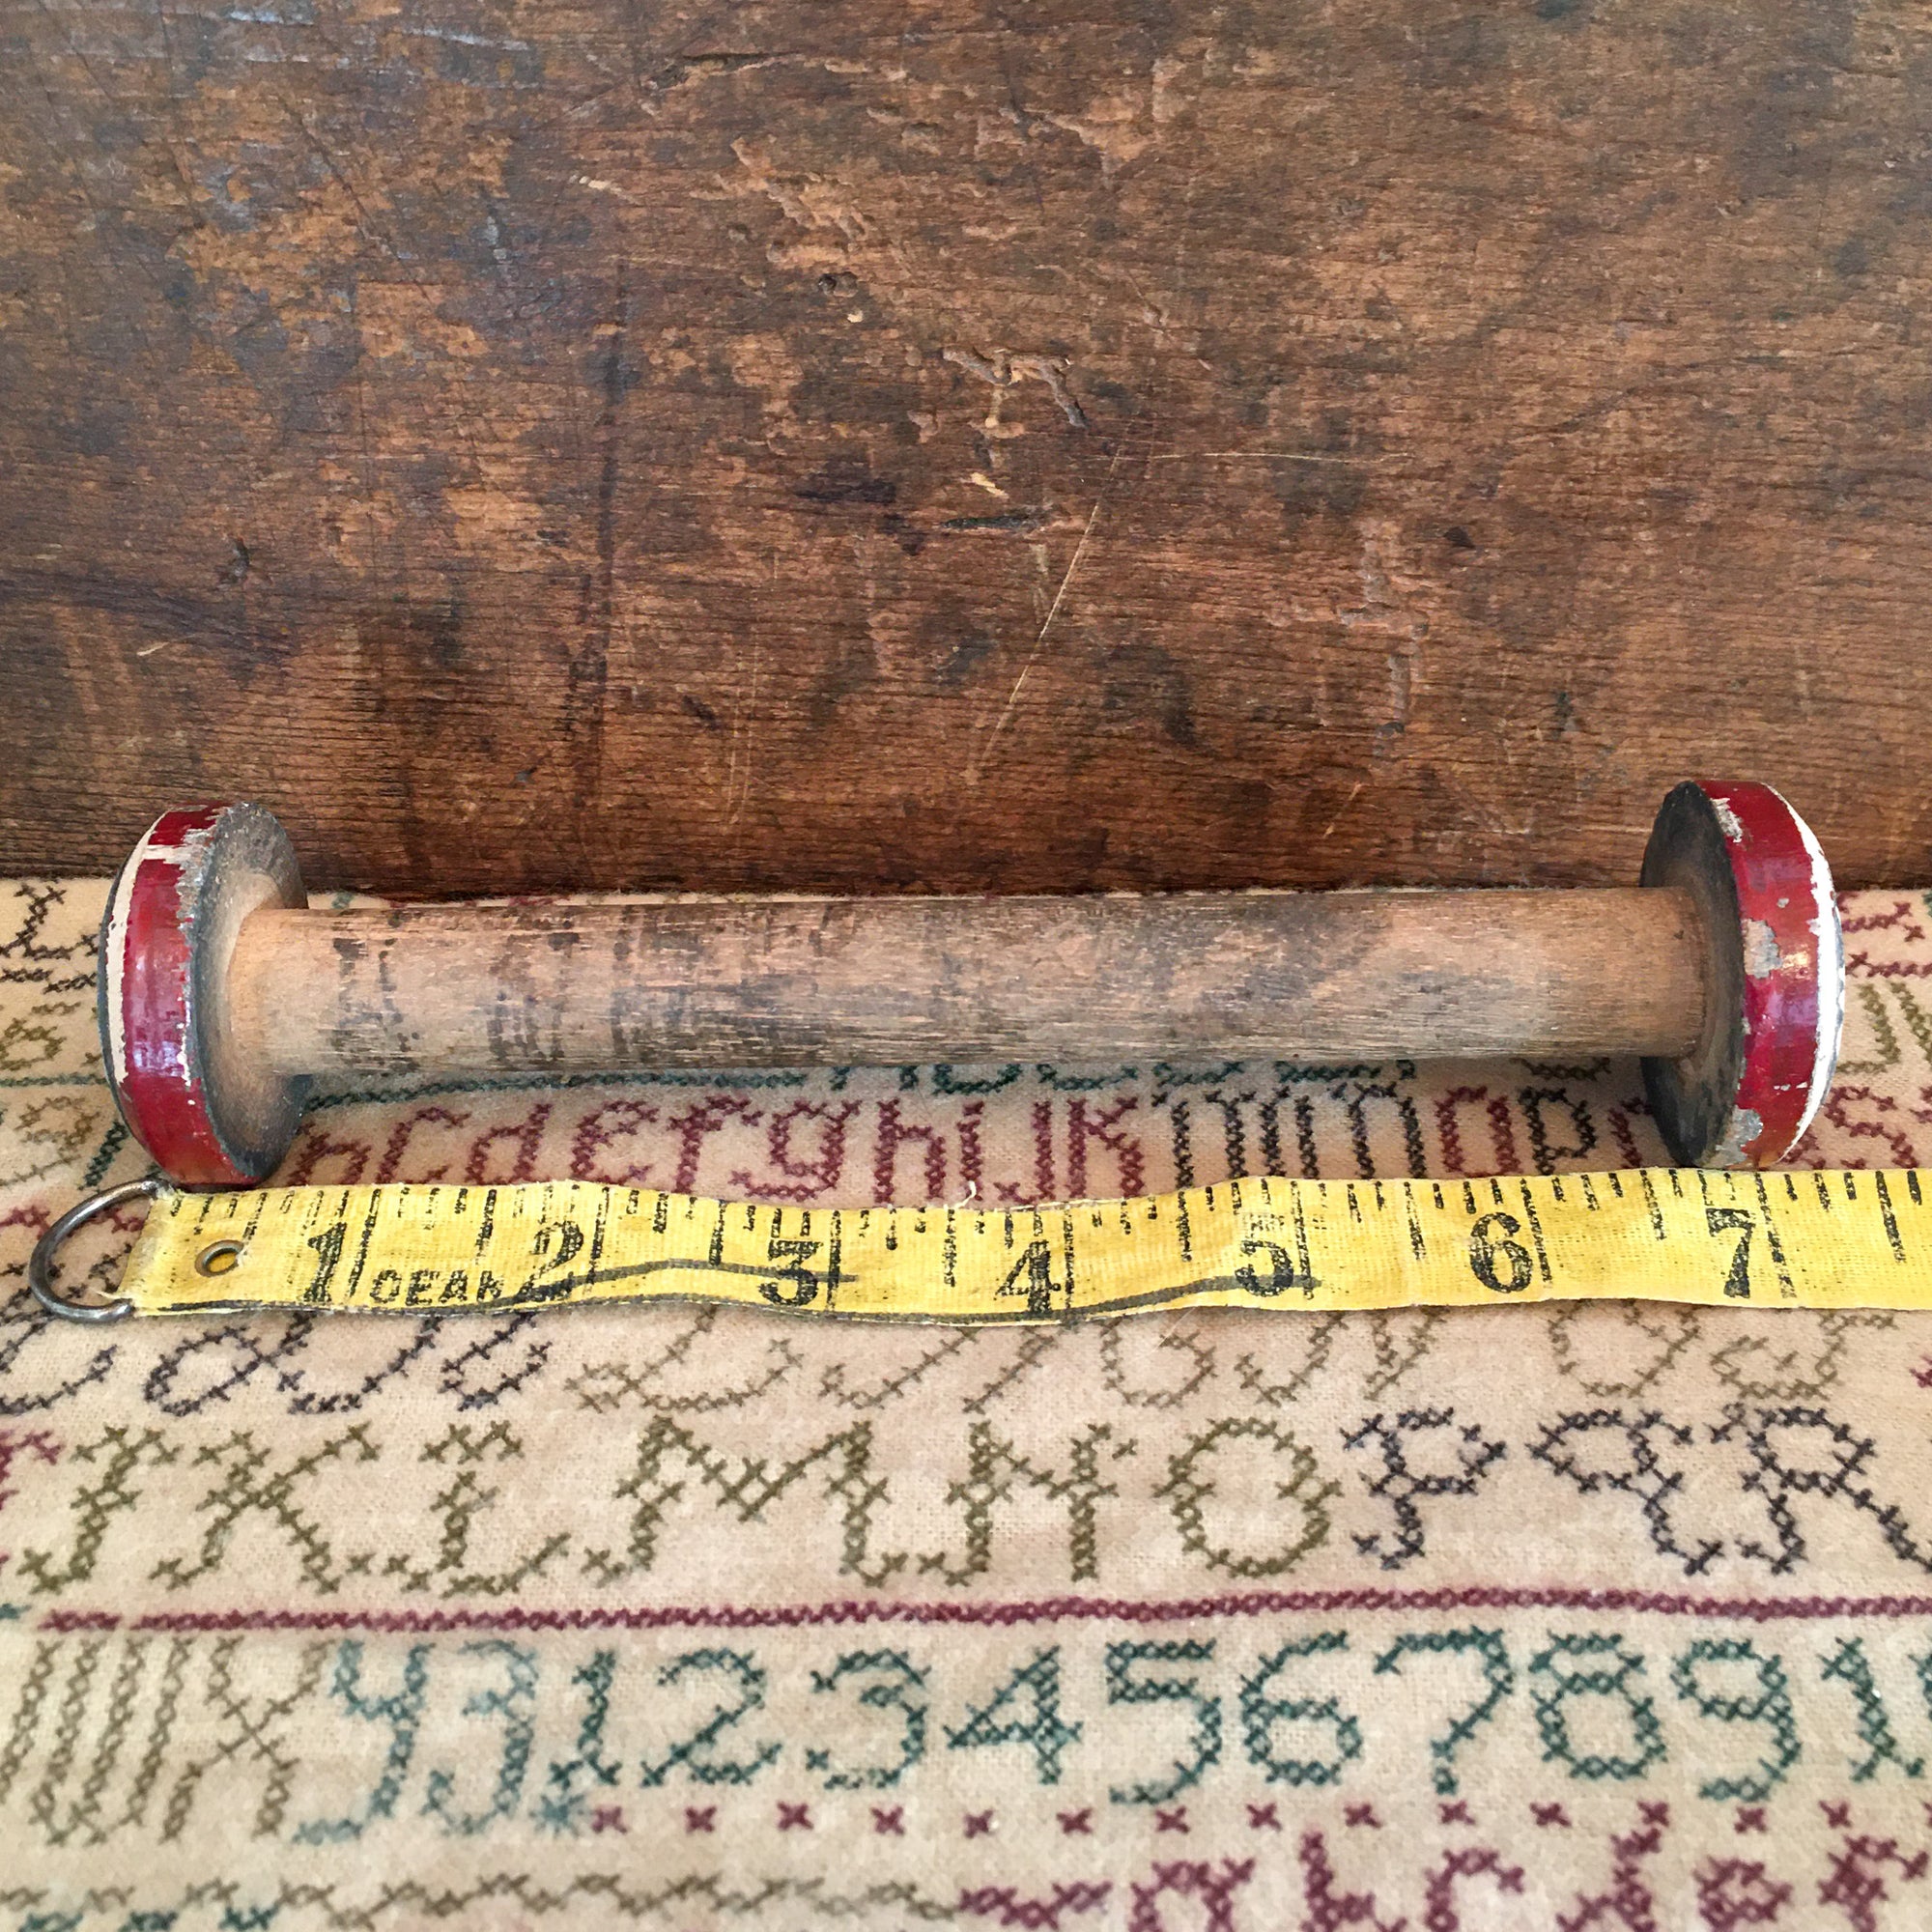 Wooden Spool 7.5” Long